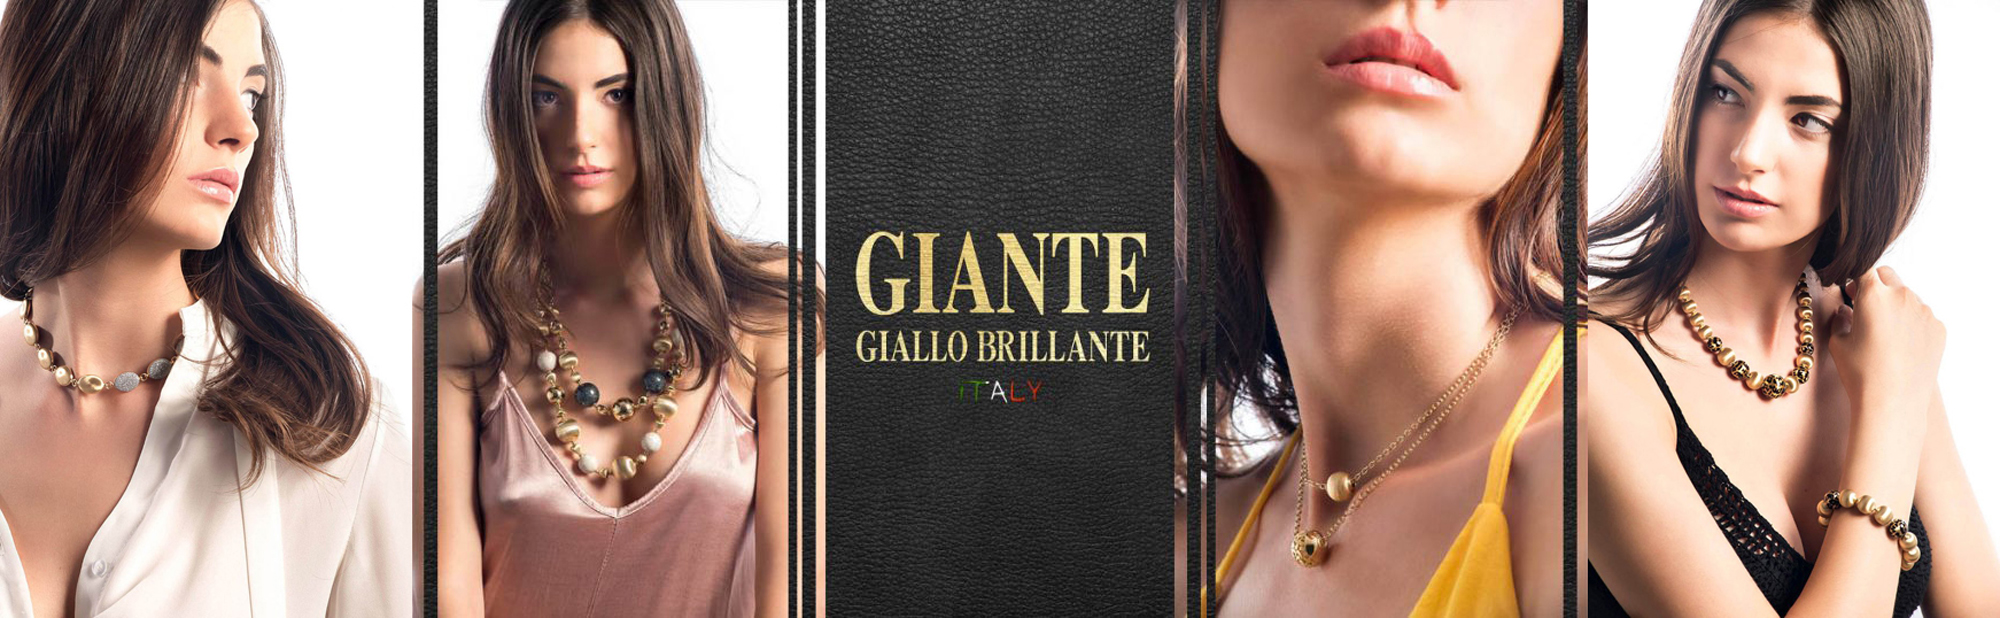 Giante Giallo Brillante Italy Gioielli in Oro Logo e foto modella